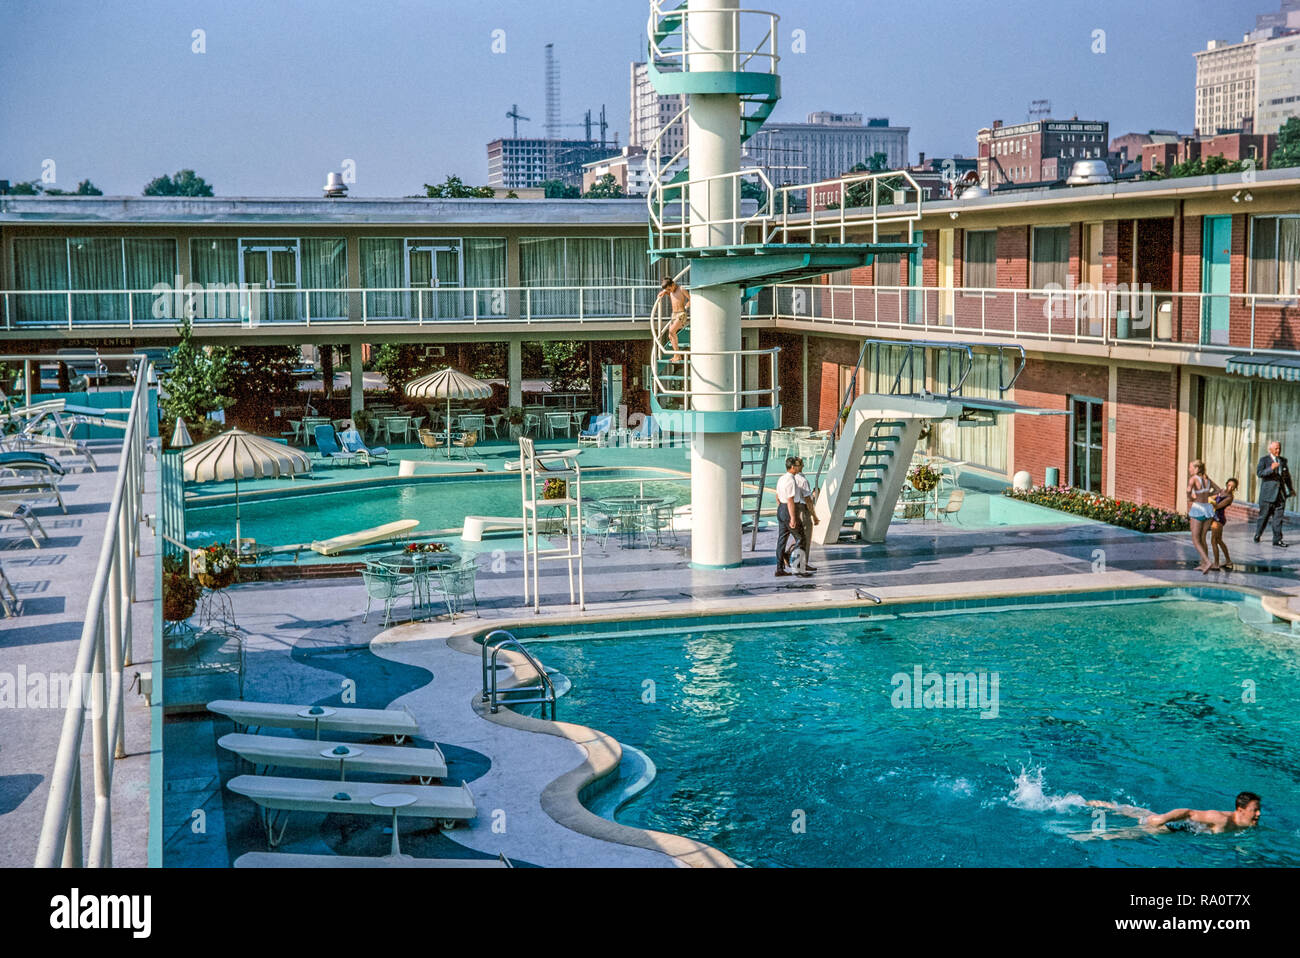 Juli 1964. Ein Außenpool, ein Hotel oder Motel, in New York. Menschen schwimmen und sonnenbaden. Stockfoto